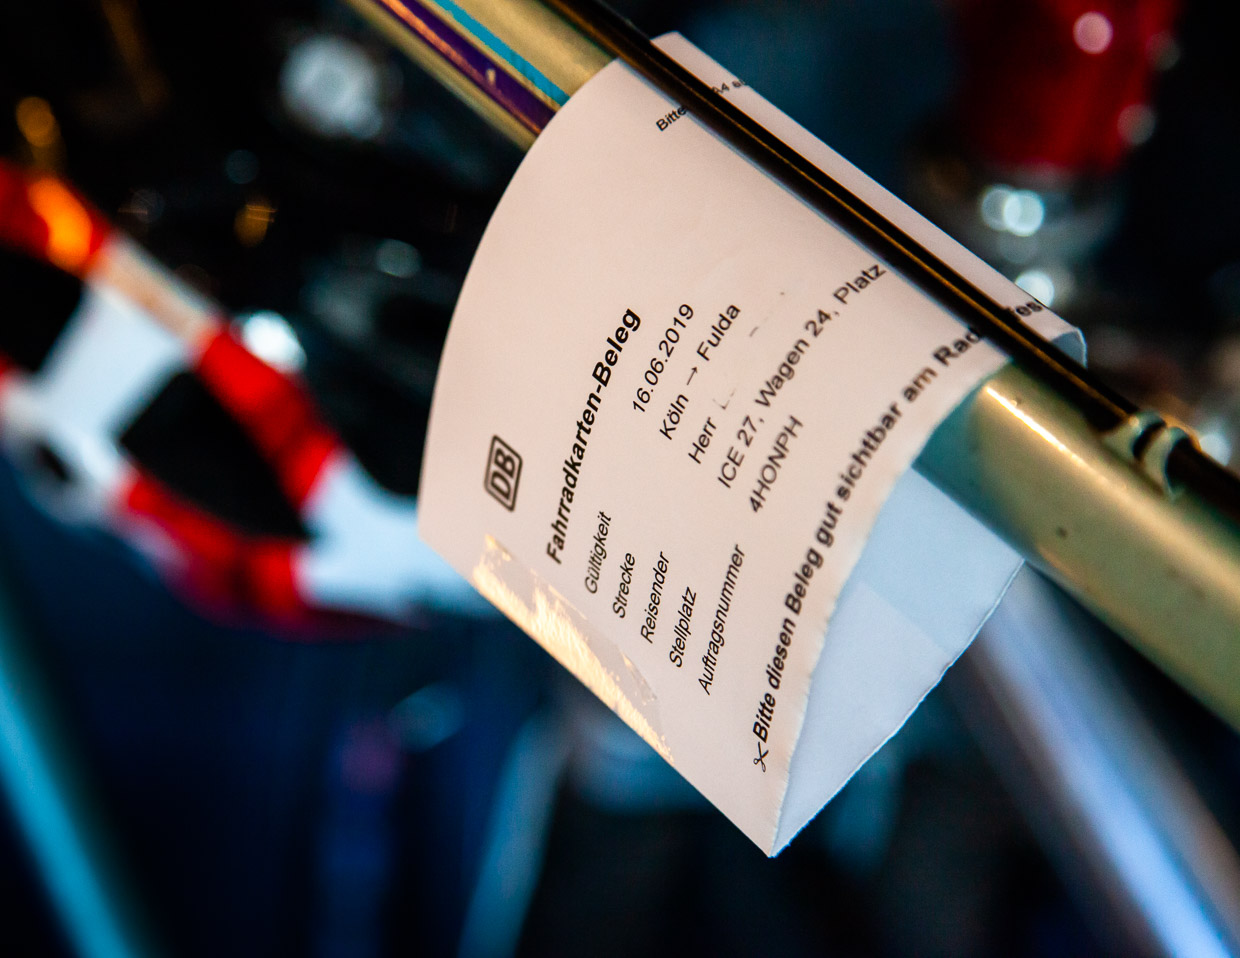 Ein Fahrradticket im internationalen Verkehr muss in Deutschland vor Fahrtantritt für 10 Euro am Schalter gebucht werden. Der Preis inklusive Stellplatzreservierung beträgt 10 Euro. Eine Onlinebuchung ist nicht möglich / © Foto: Georg Berg